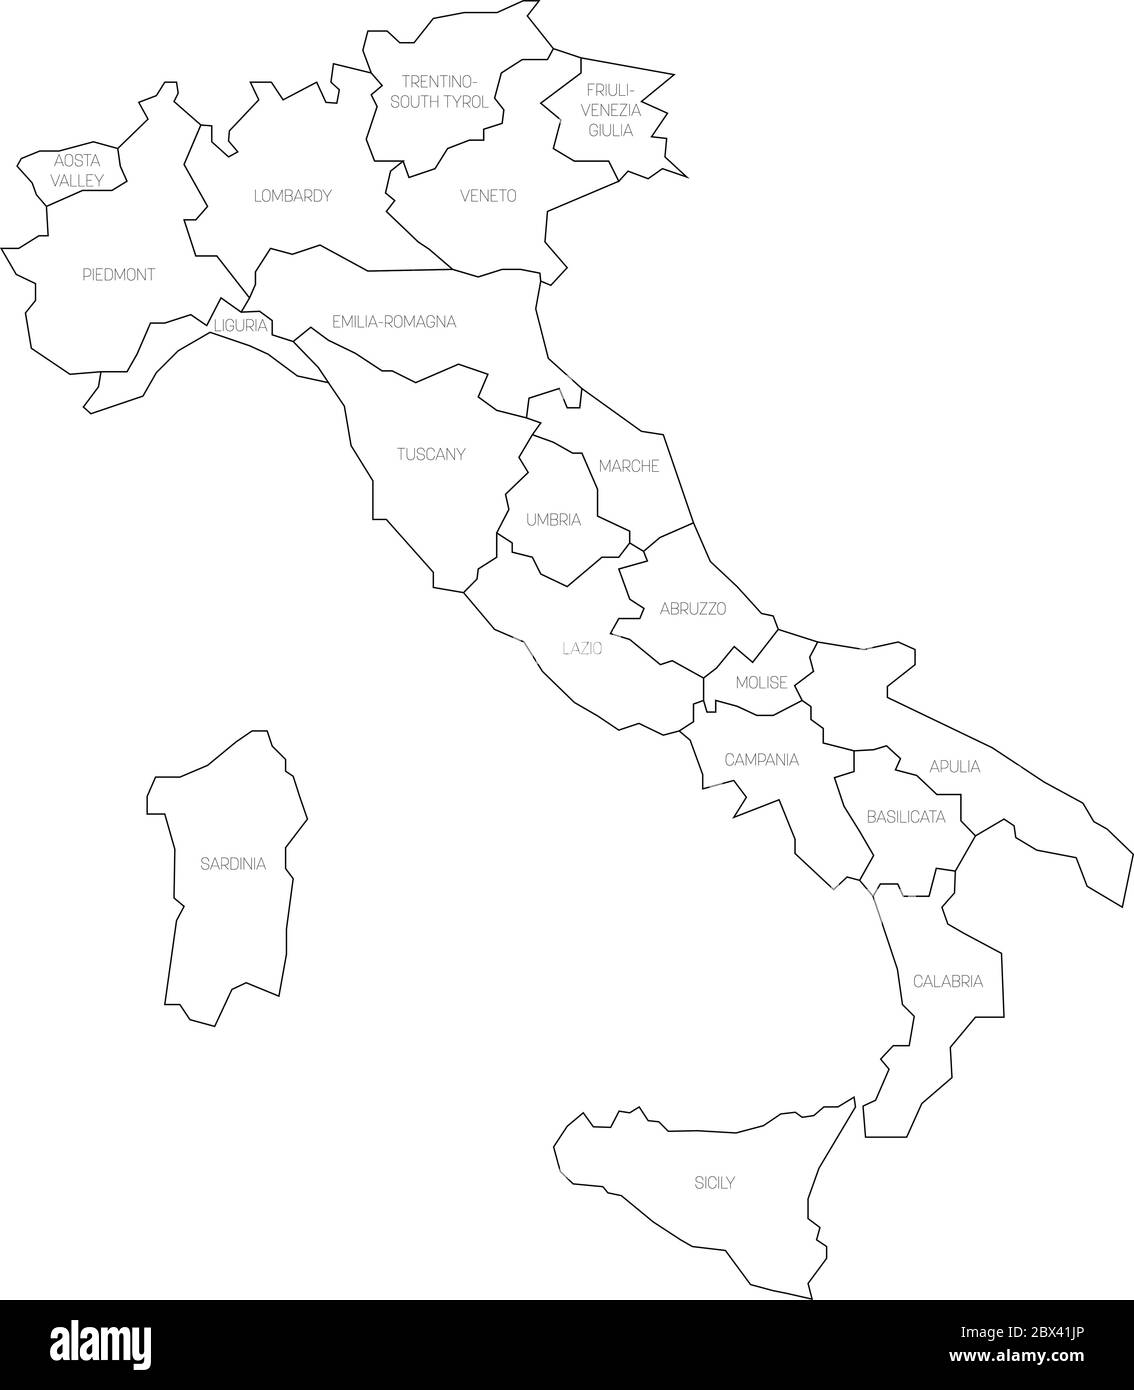 Karte von Italien in 20 Verwaltungsregionen unterteilt. Weißes Land, schwarze Ränder und schwarze Etiketten. Einfache flache Vektorgrafik. Stock Vektor